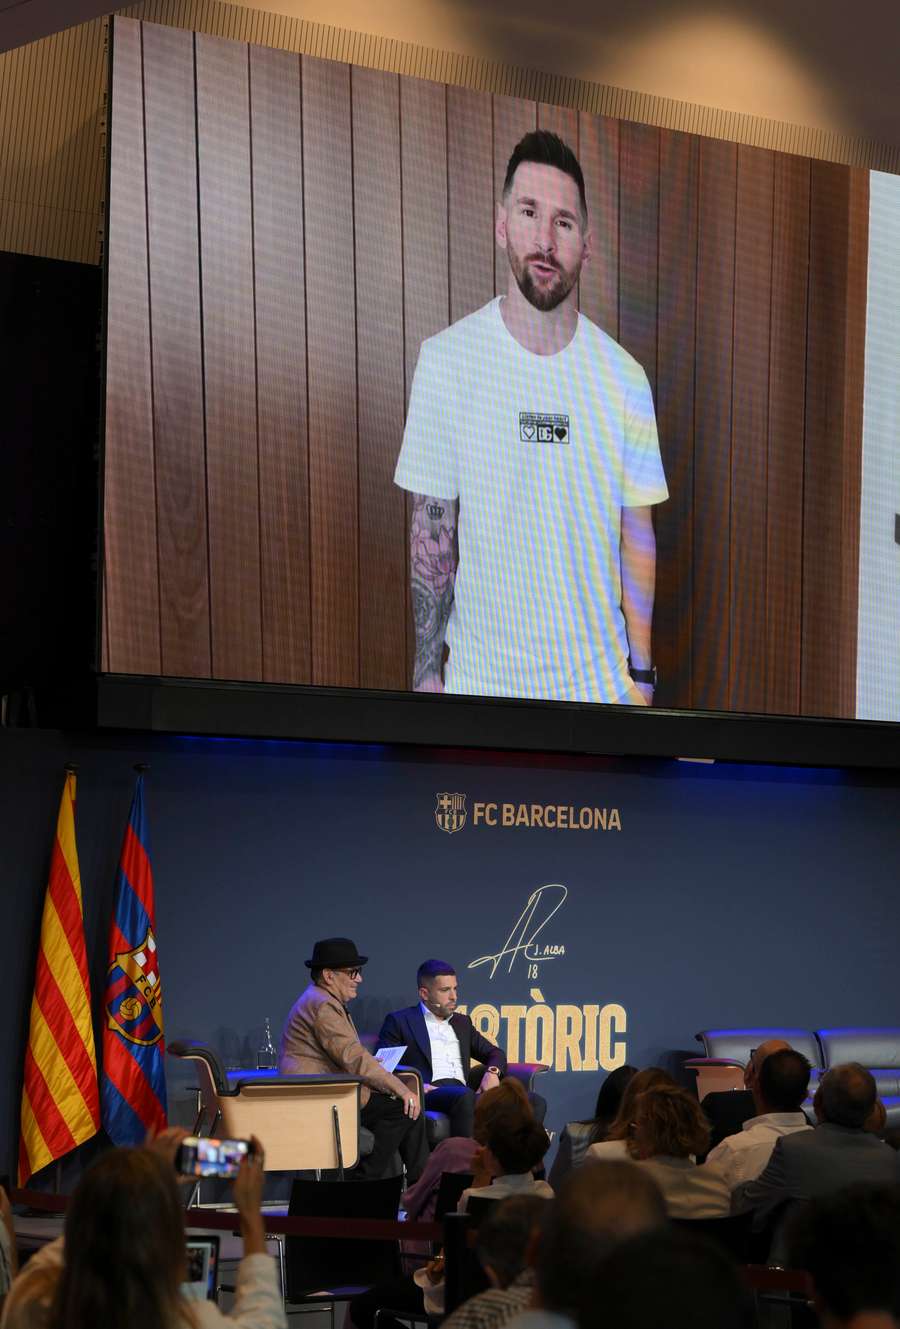 Hiszpański obrońca Barcelony Jordi Alba (po prawej) słucha wiadomości od byłego zawodnika Barcelony Lionela Messiego (na ekranie) podczas pożegnalnej imprezy na Camp Nou.